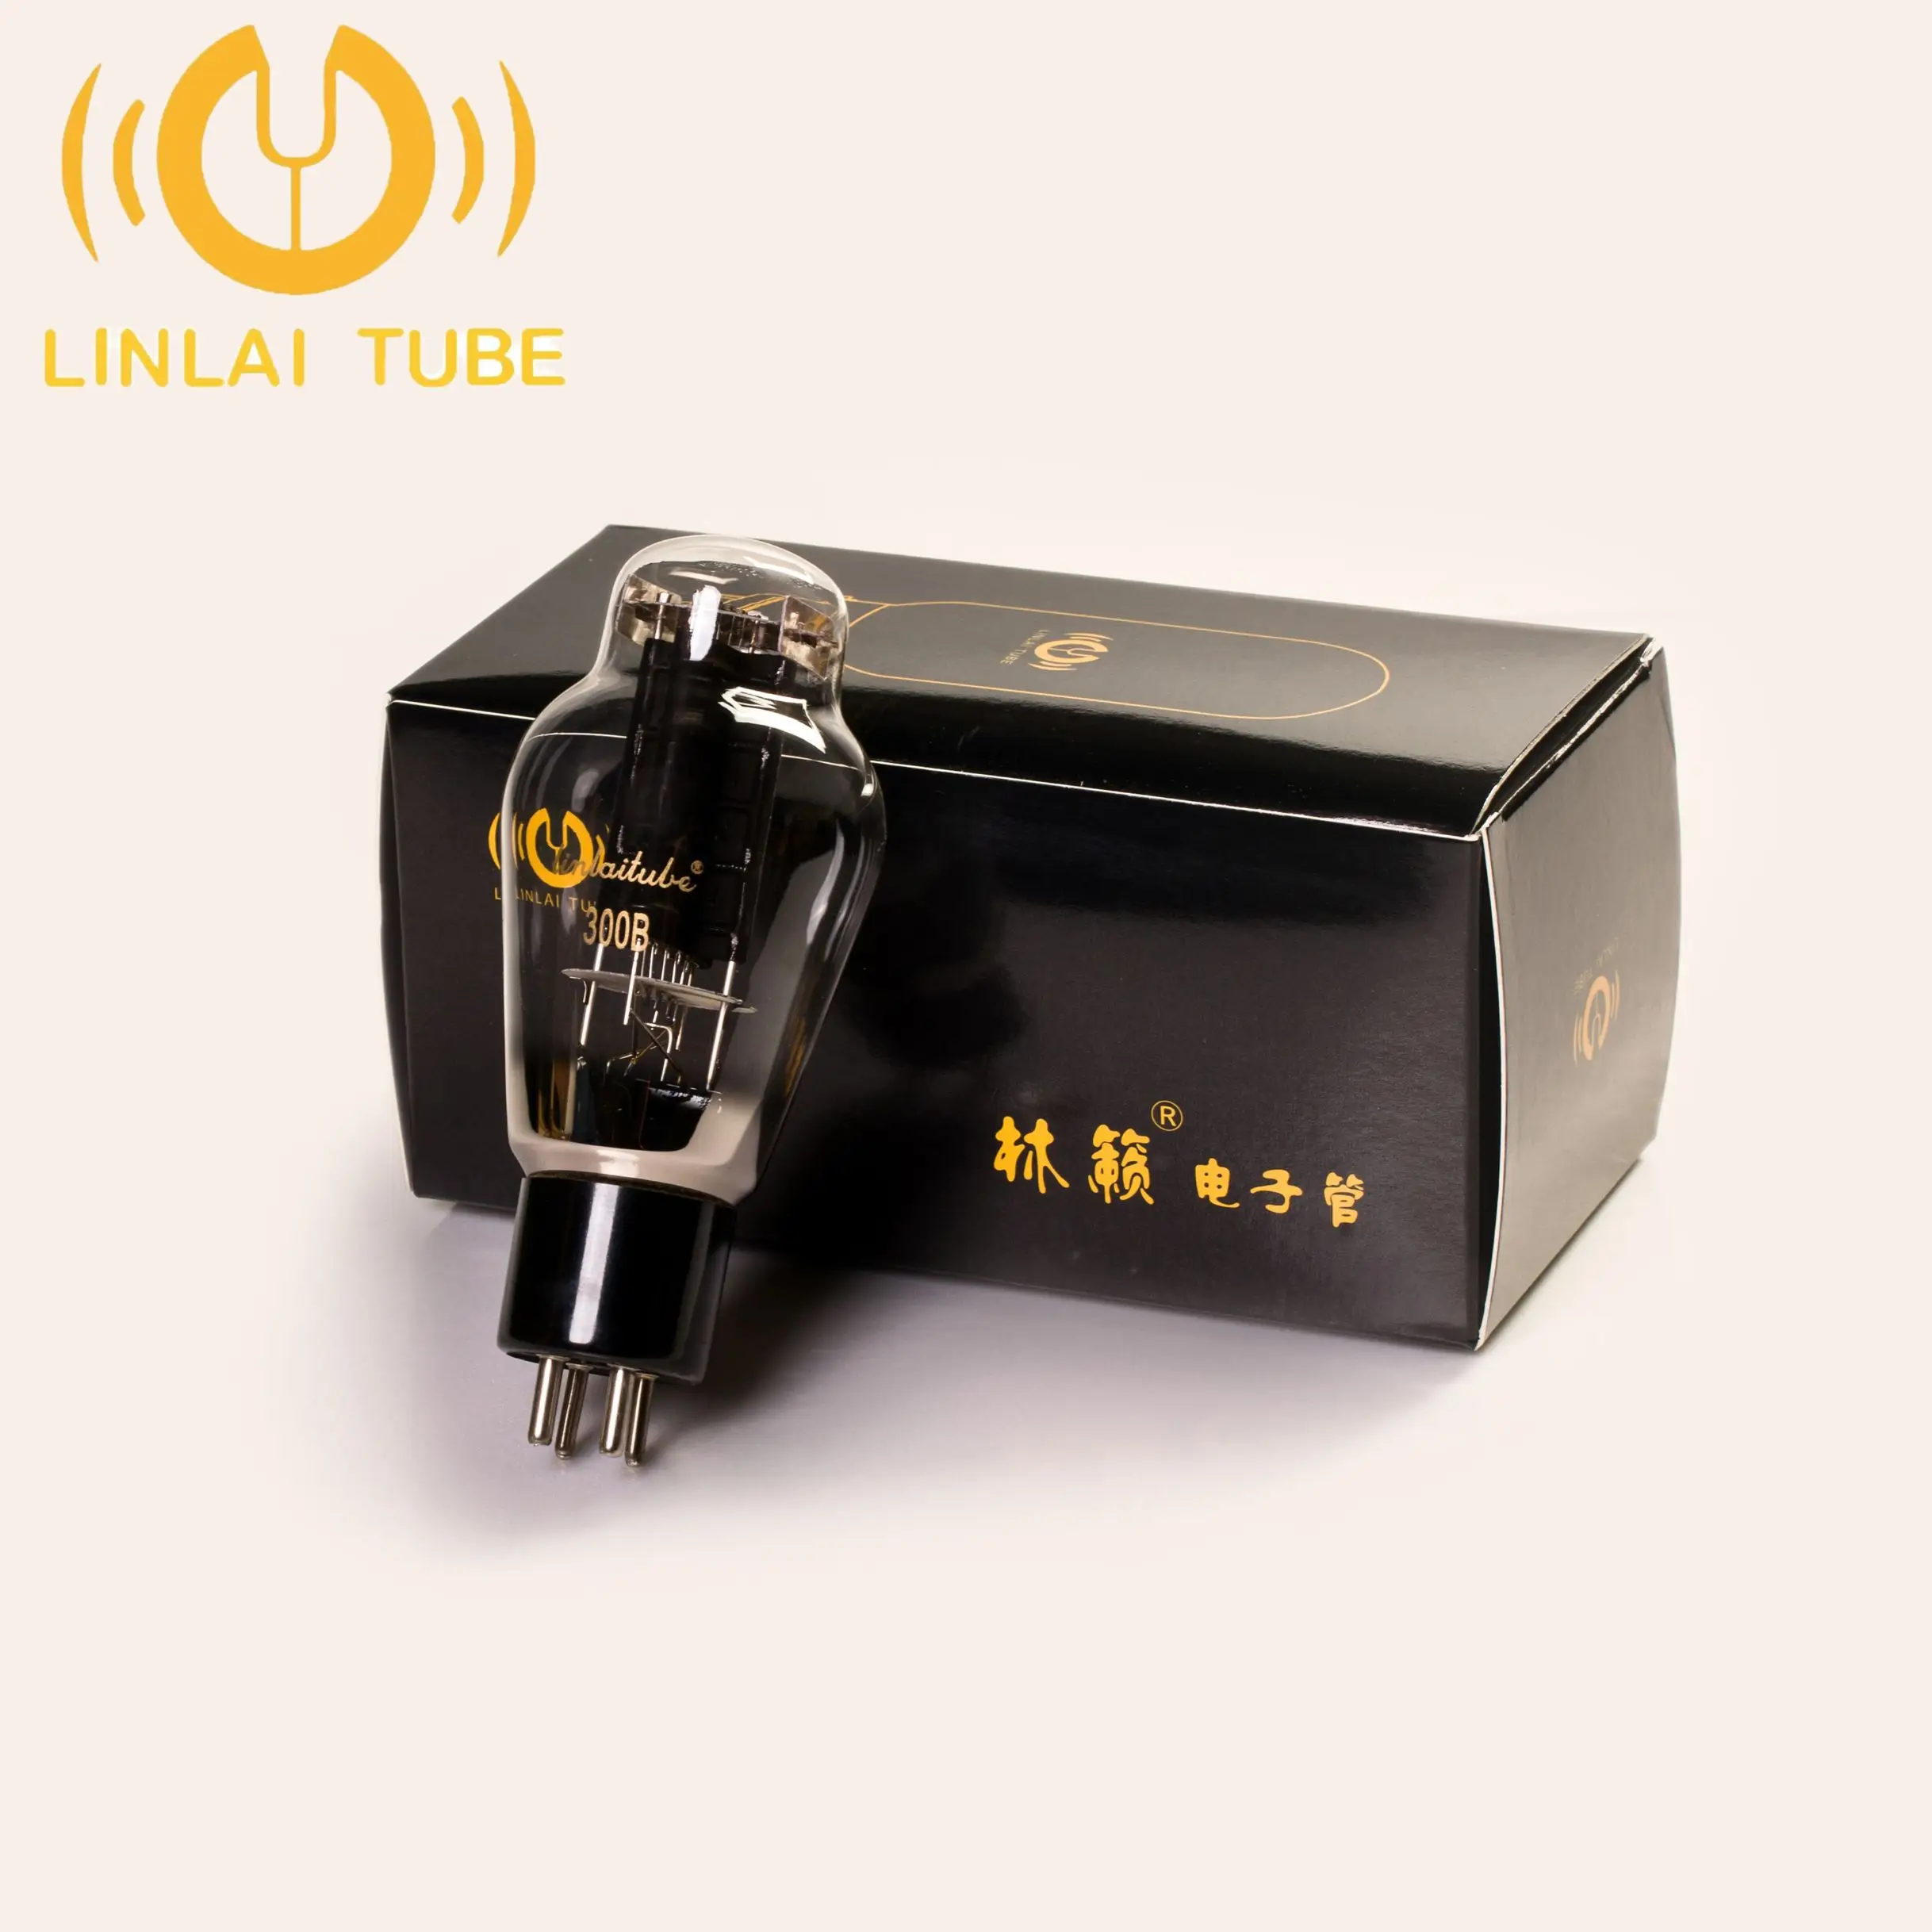 Valvola LINLAI 300B/tubo a vuoto, accoppiamento di precisione, sostituto di vari 300B come Golden Lion